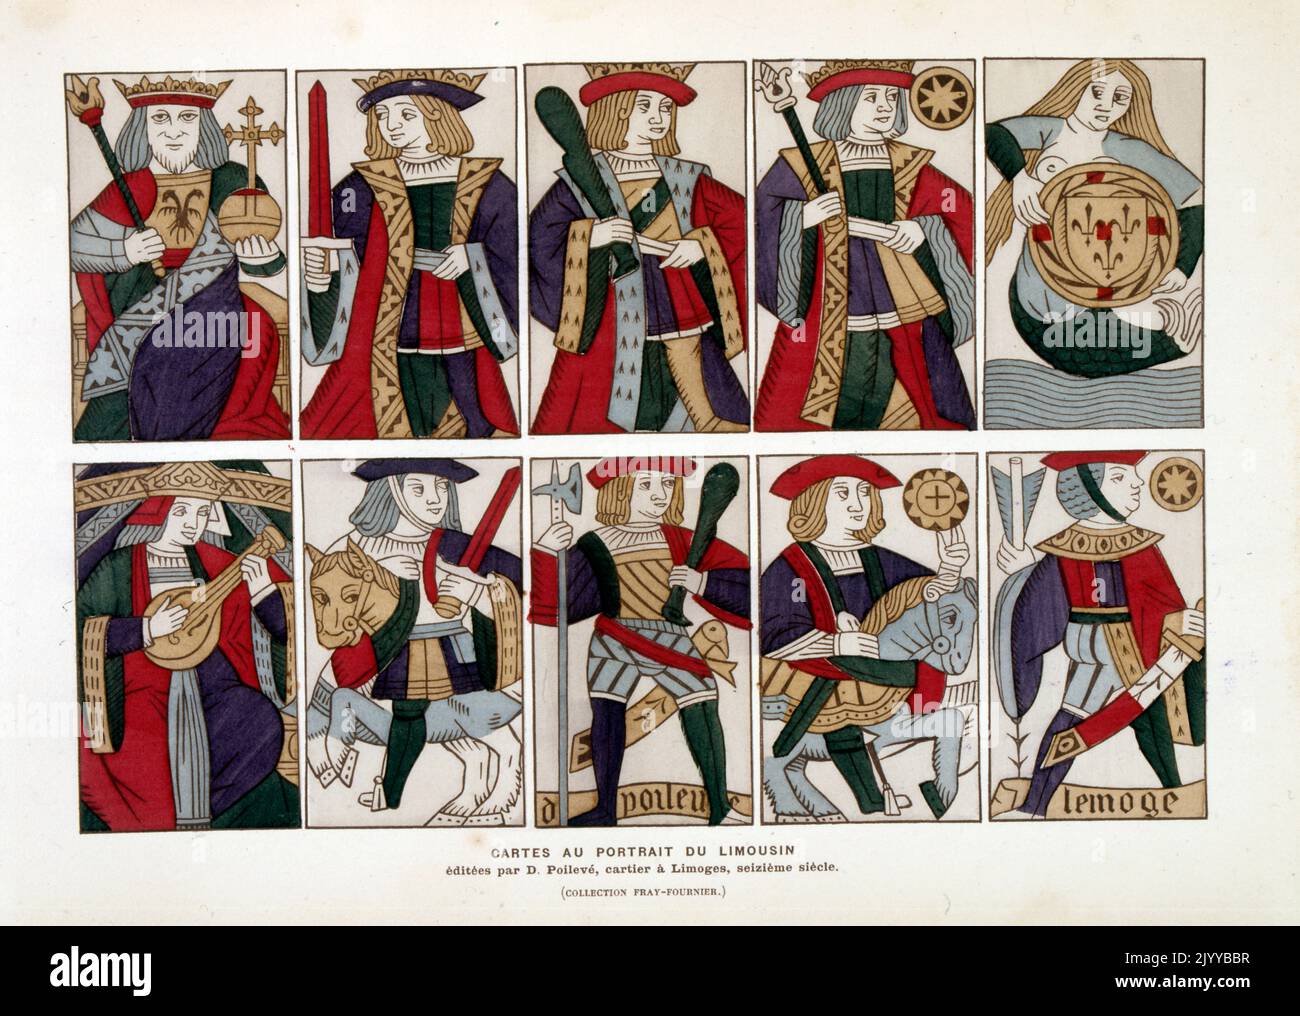 Illustration colorée de la carte à jouer de Limousin publiée par D. Poileve au 16th siècle à Limoges. Banque D'Images